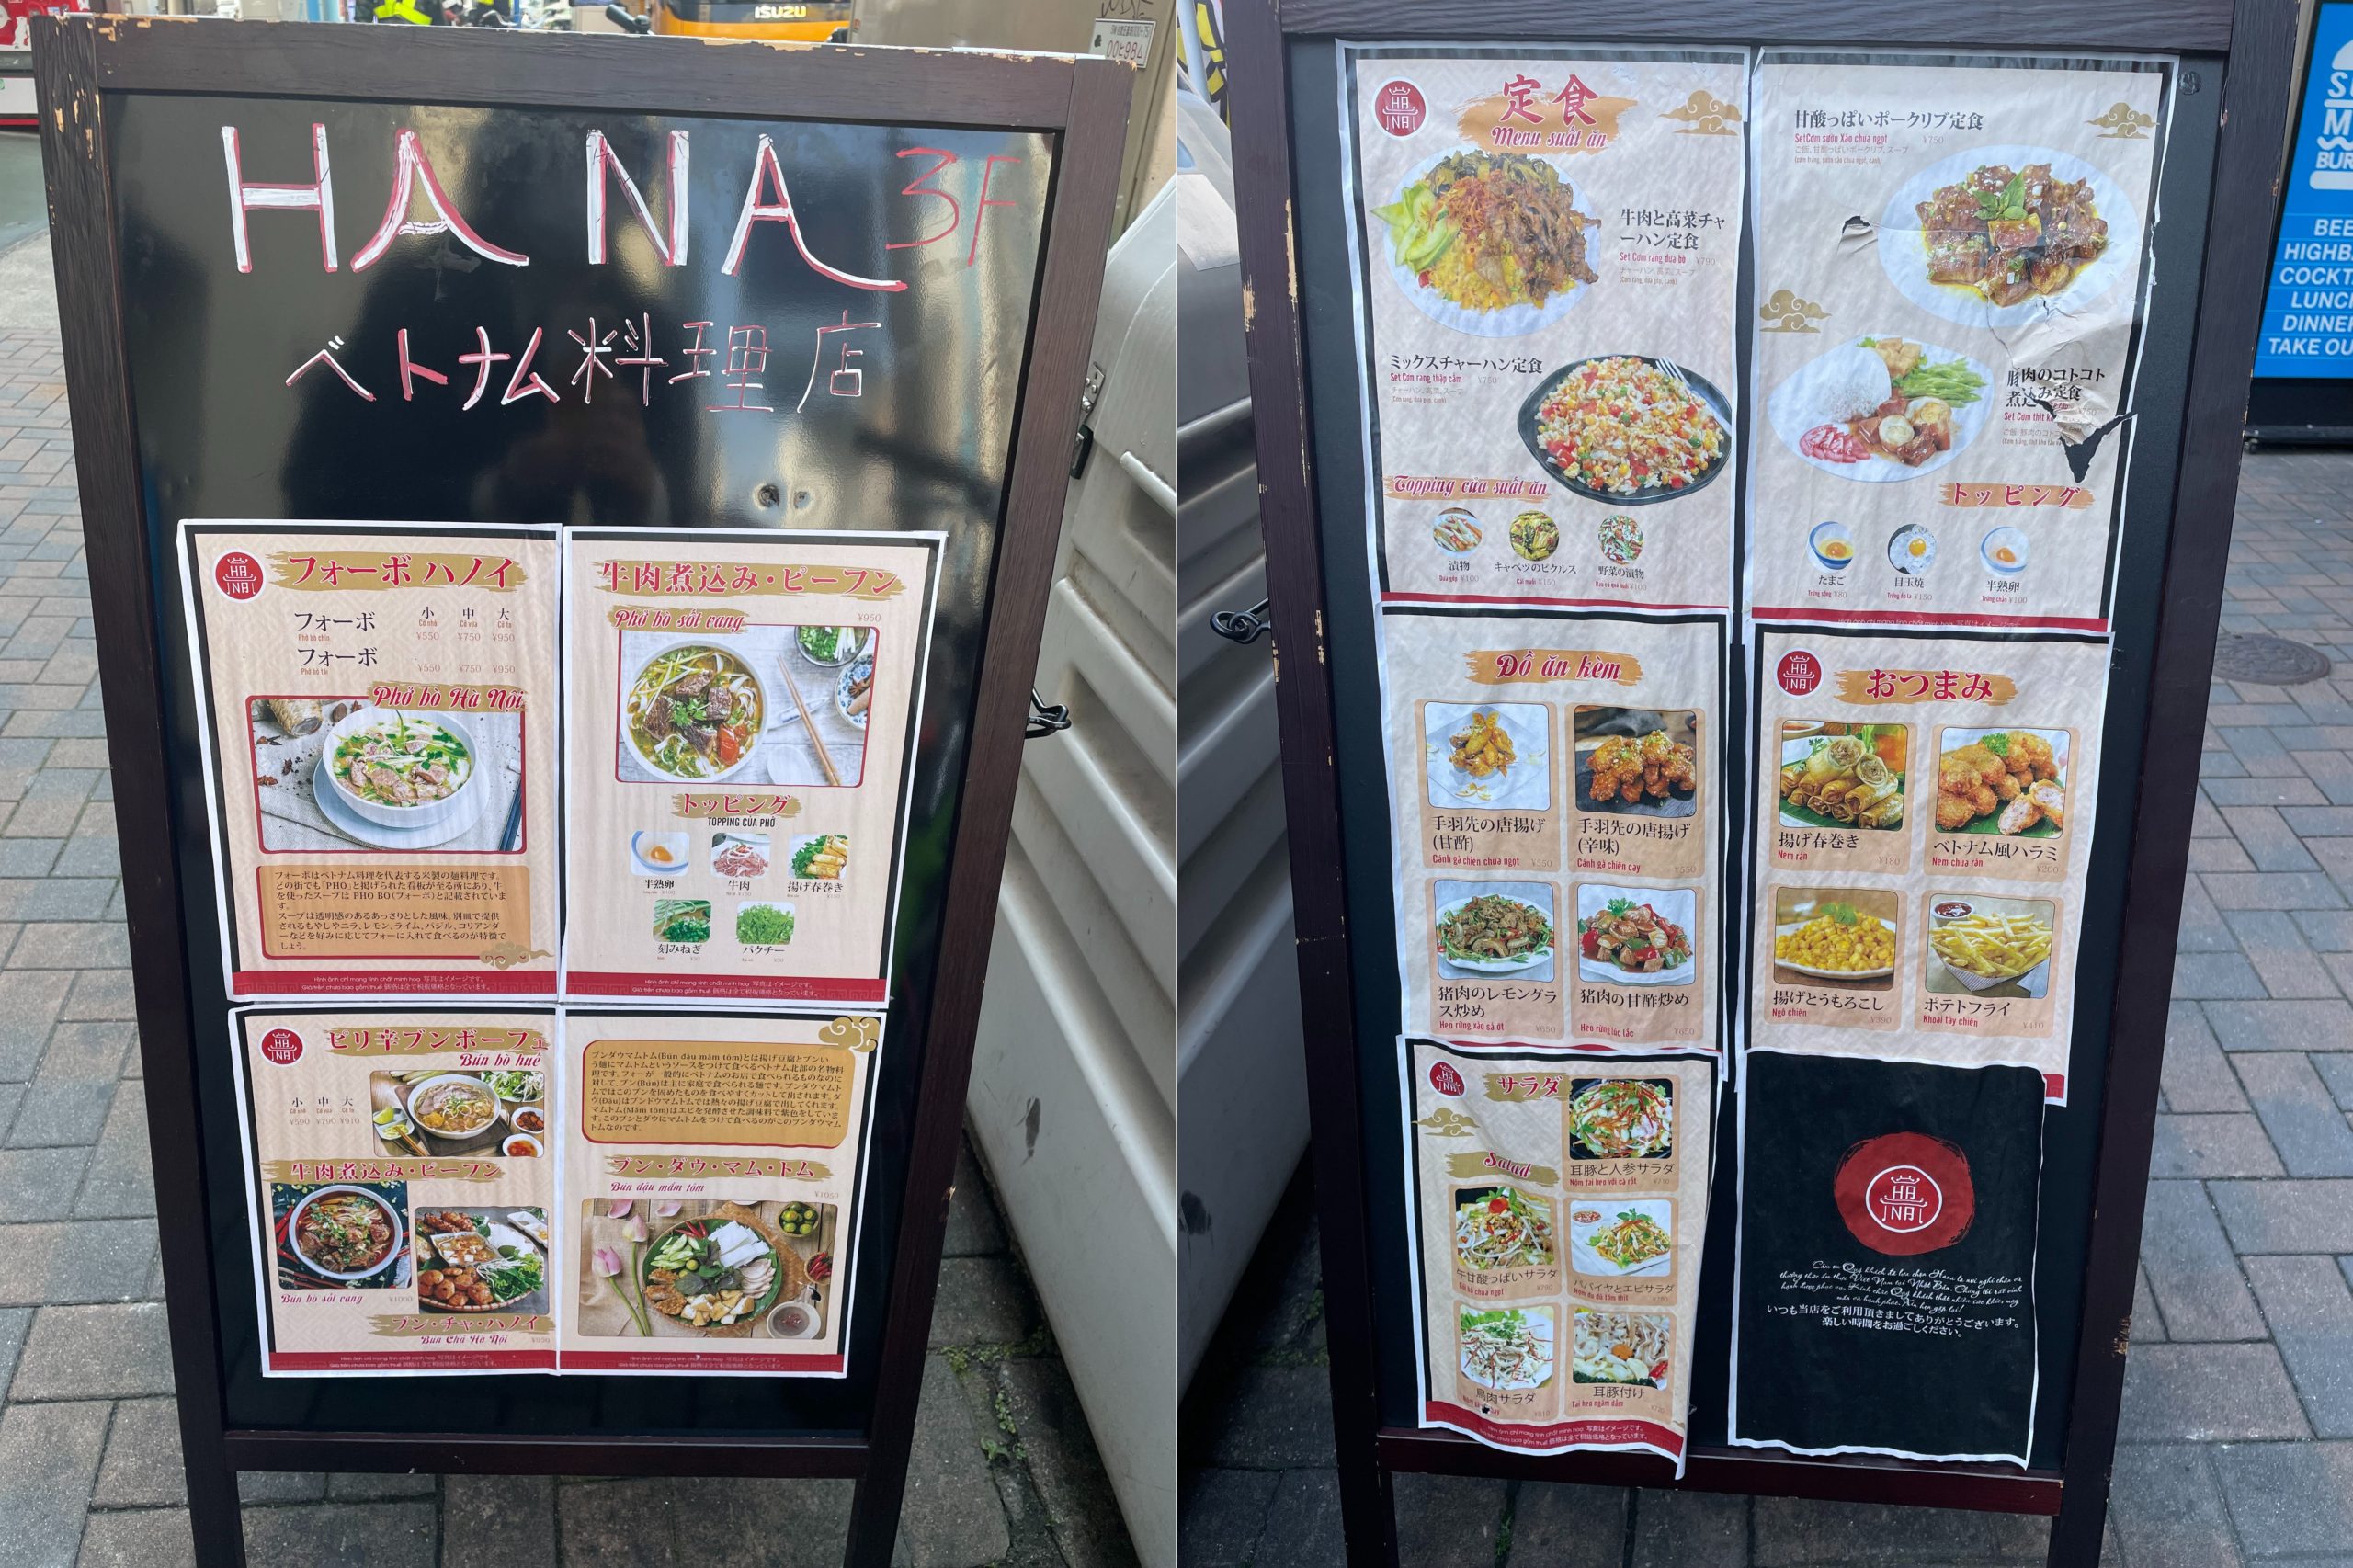 【名古屋市中区錦】ボリューム満点の定食が楽しめる☆ベトナム料理店「HANA」